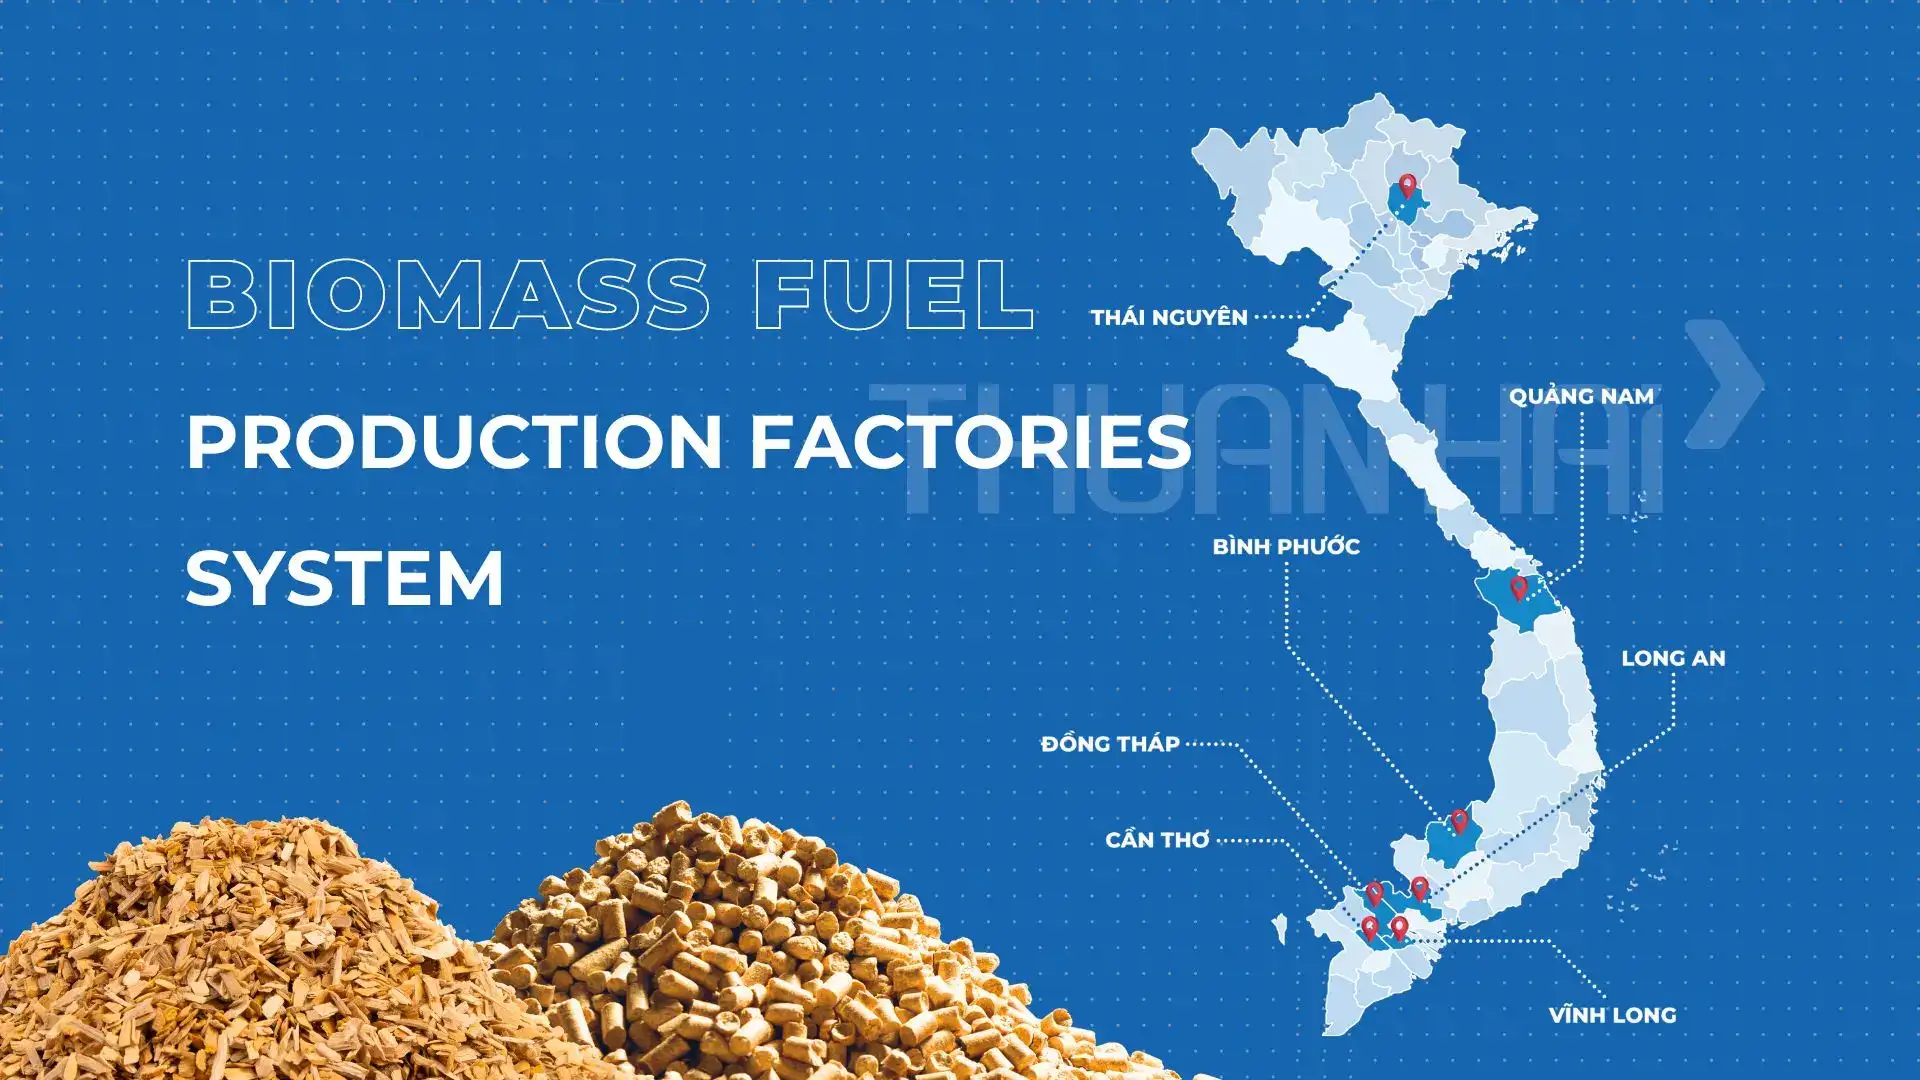 biomass-fuel-production-factories-system-en.webp